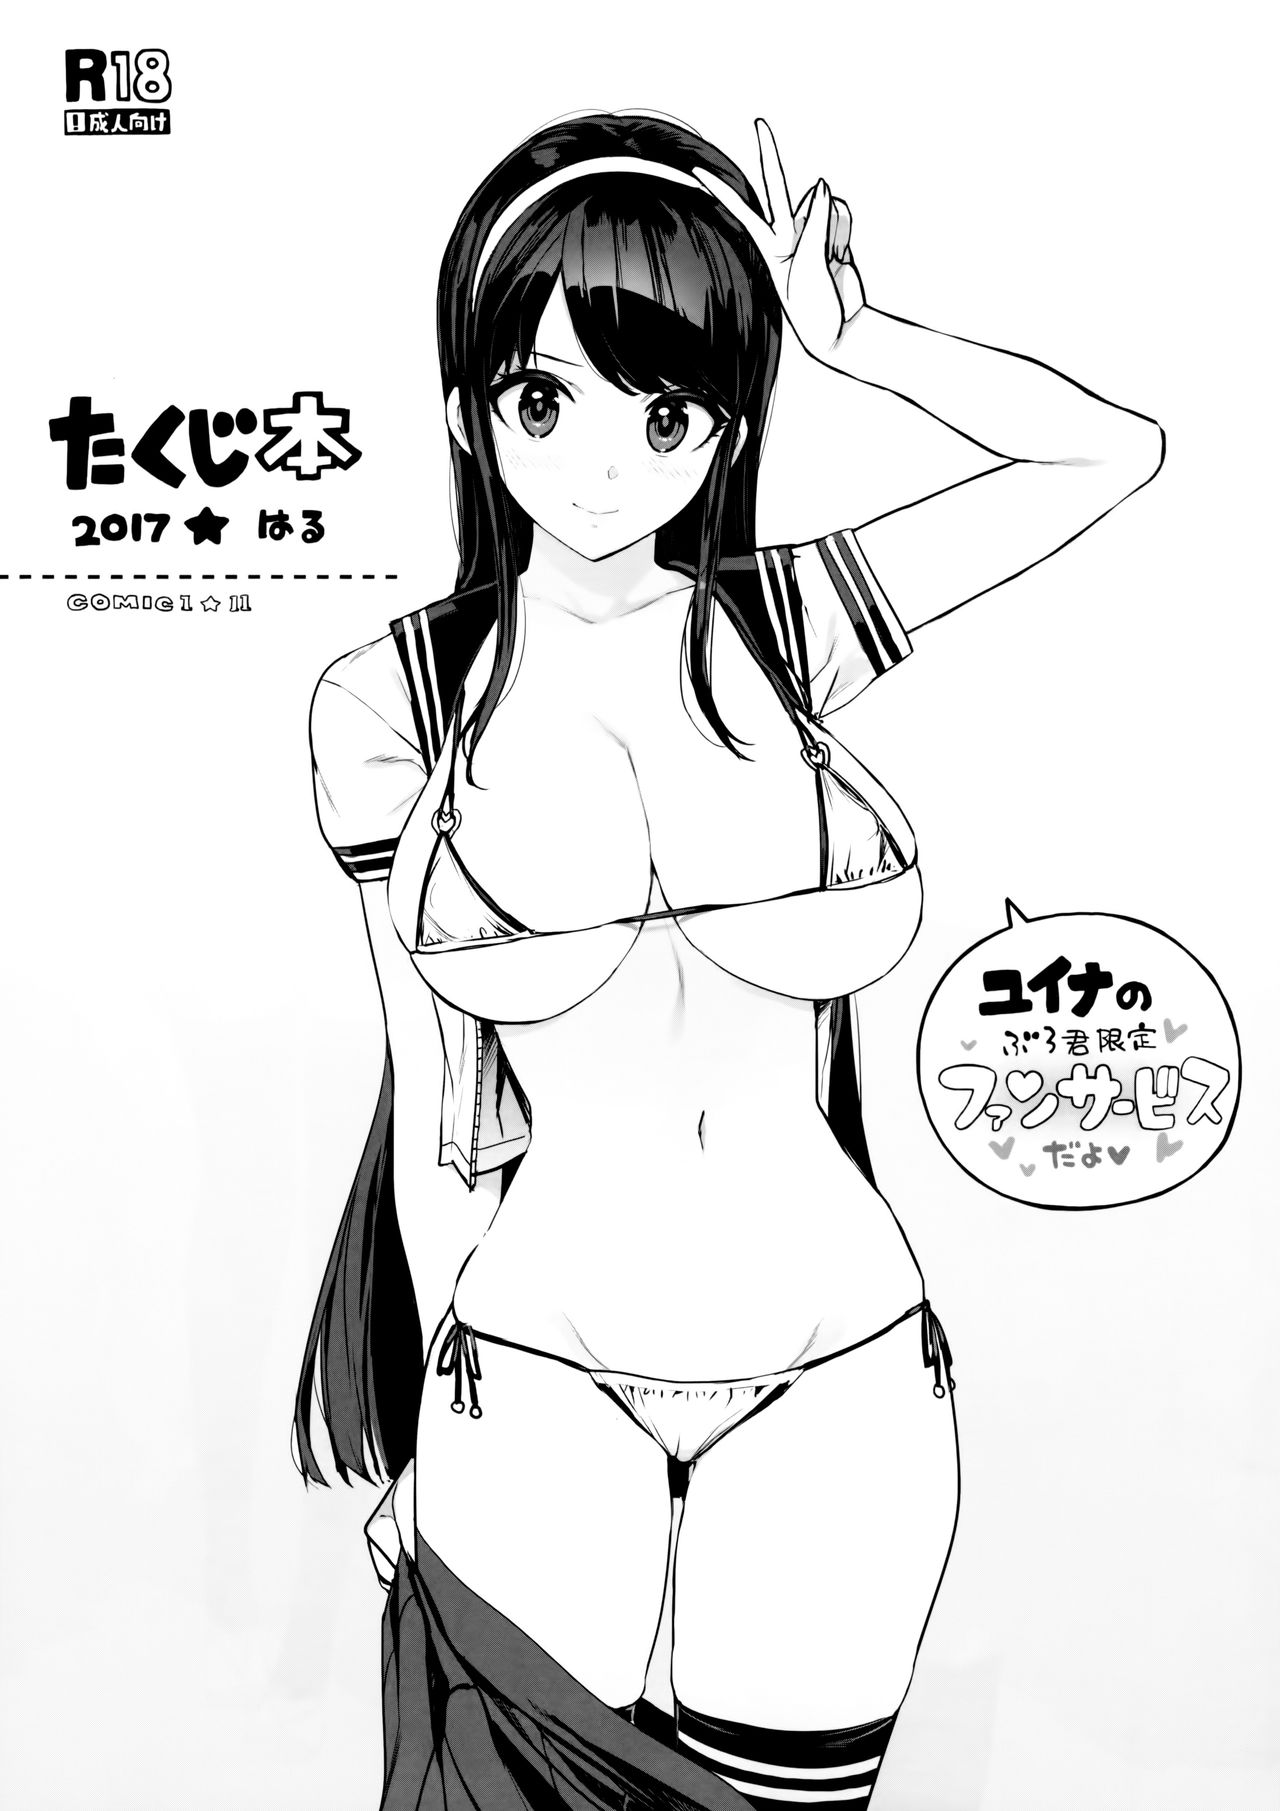 (COMIC1☆11) [Number2 (Takuji)] Takuji Bon 2017 Haru (Reco Love) page 1 full